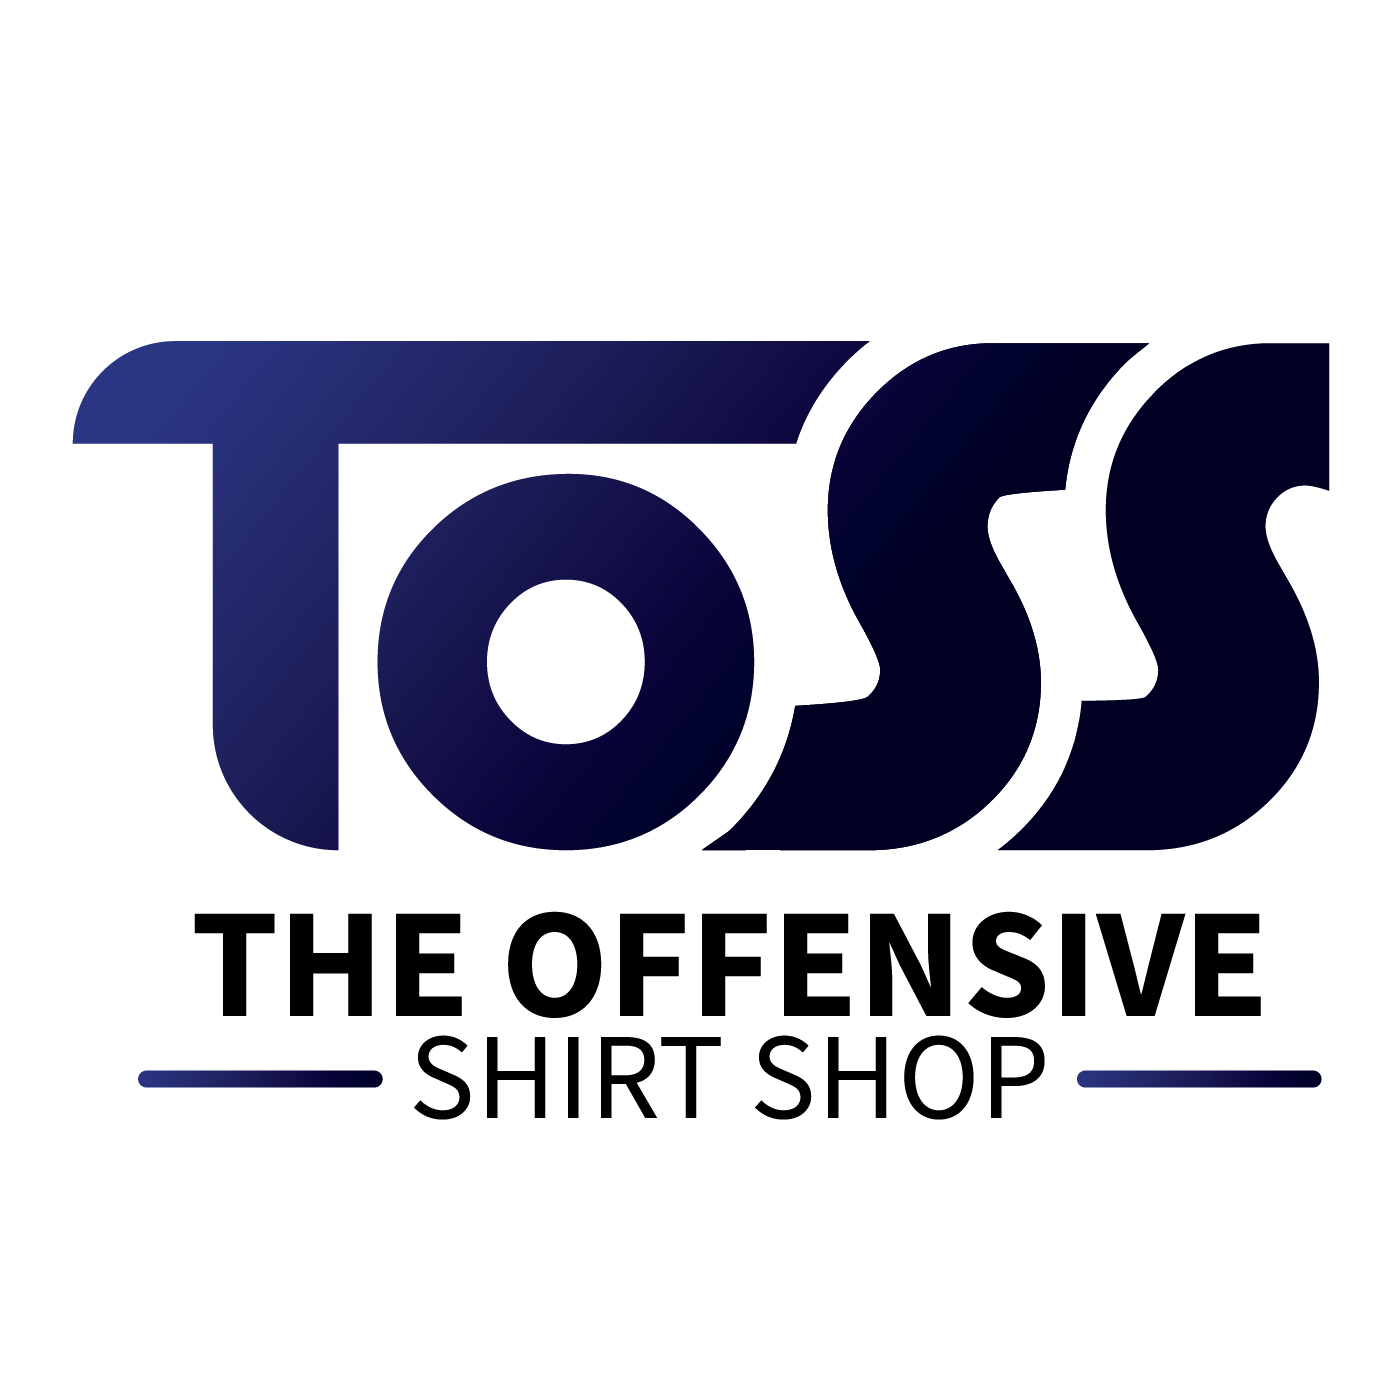 The Offensive Shirt Shop